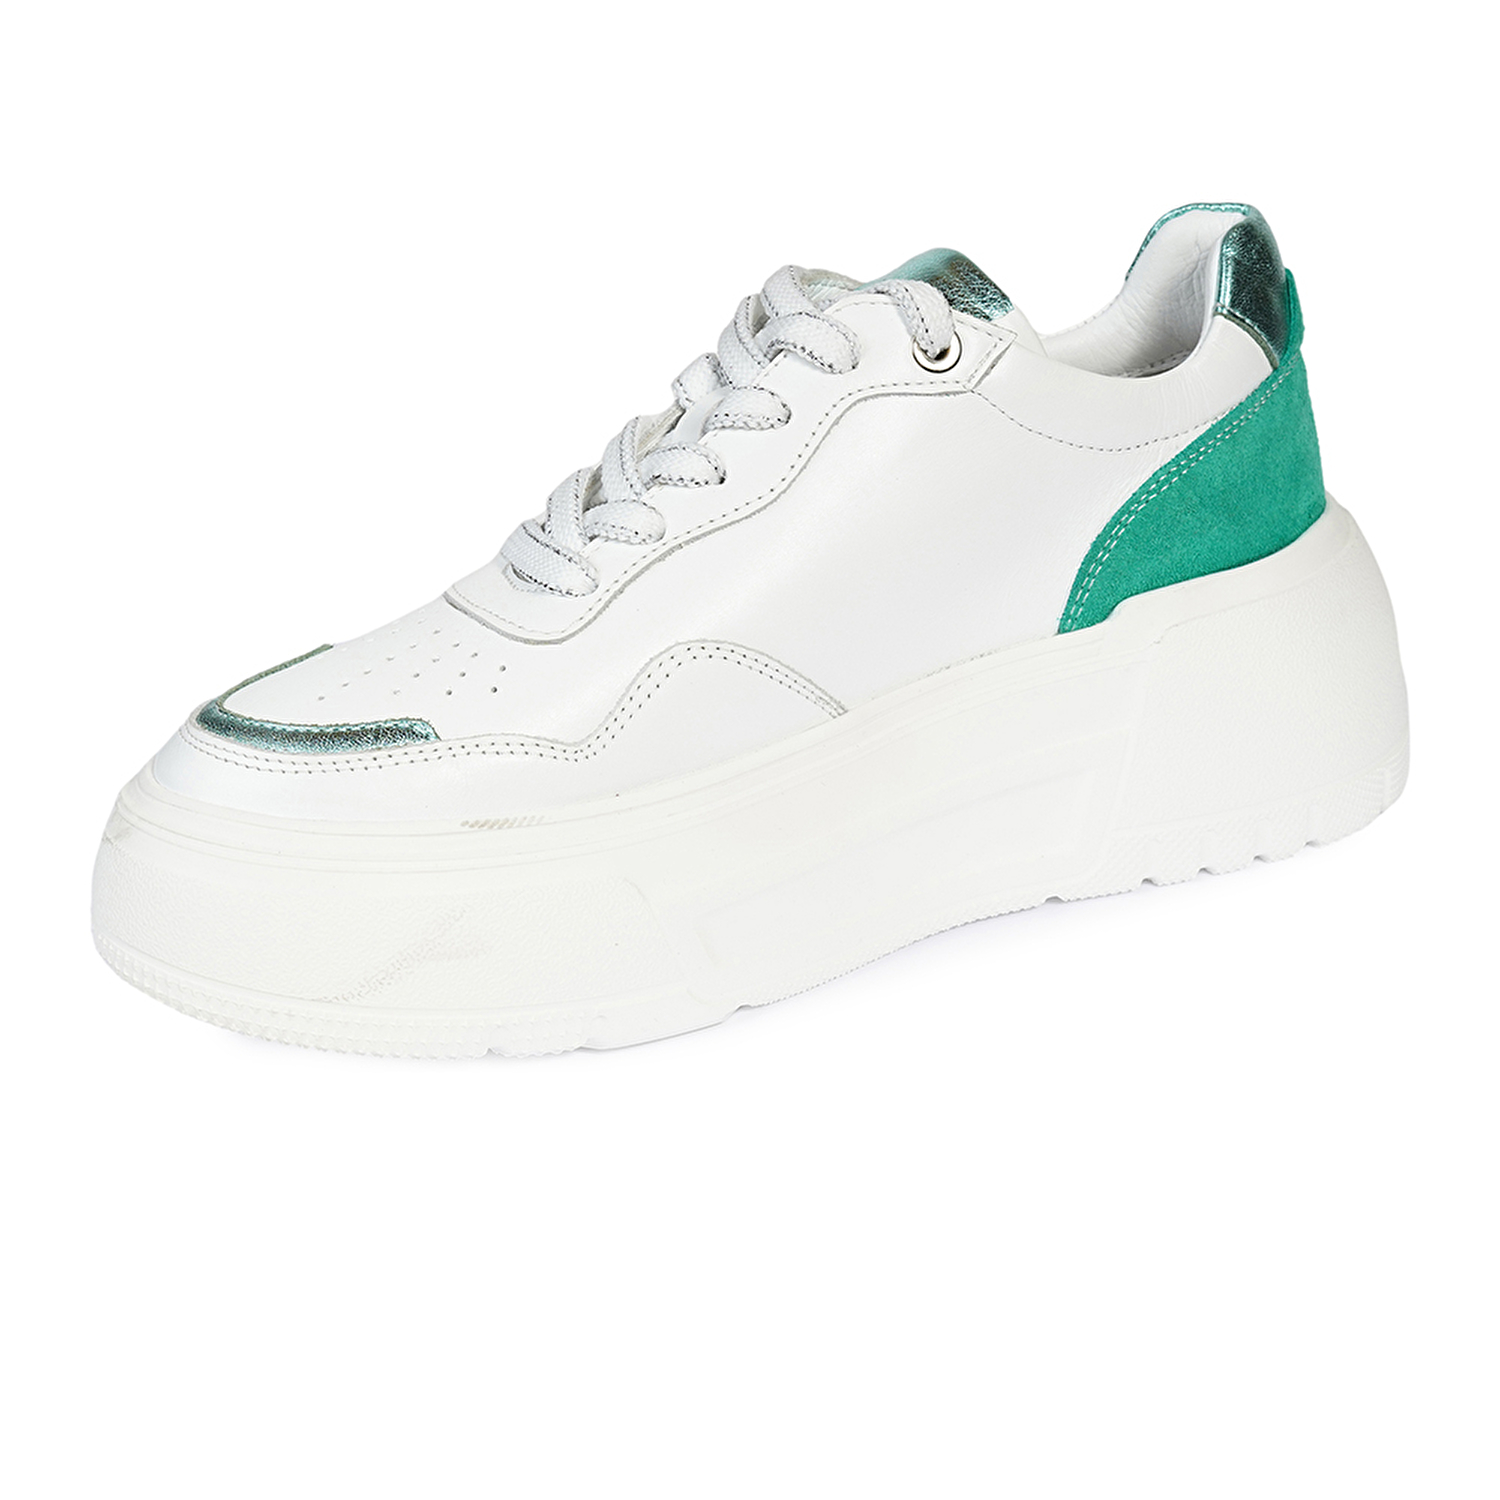 Kadın Beyaz Yeşil Hakiki Deri Sneaker Ayakkabı 4Y2SA59041-2